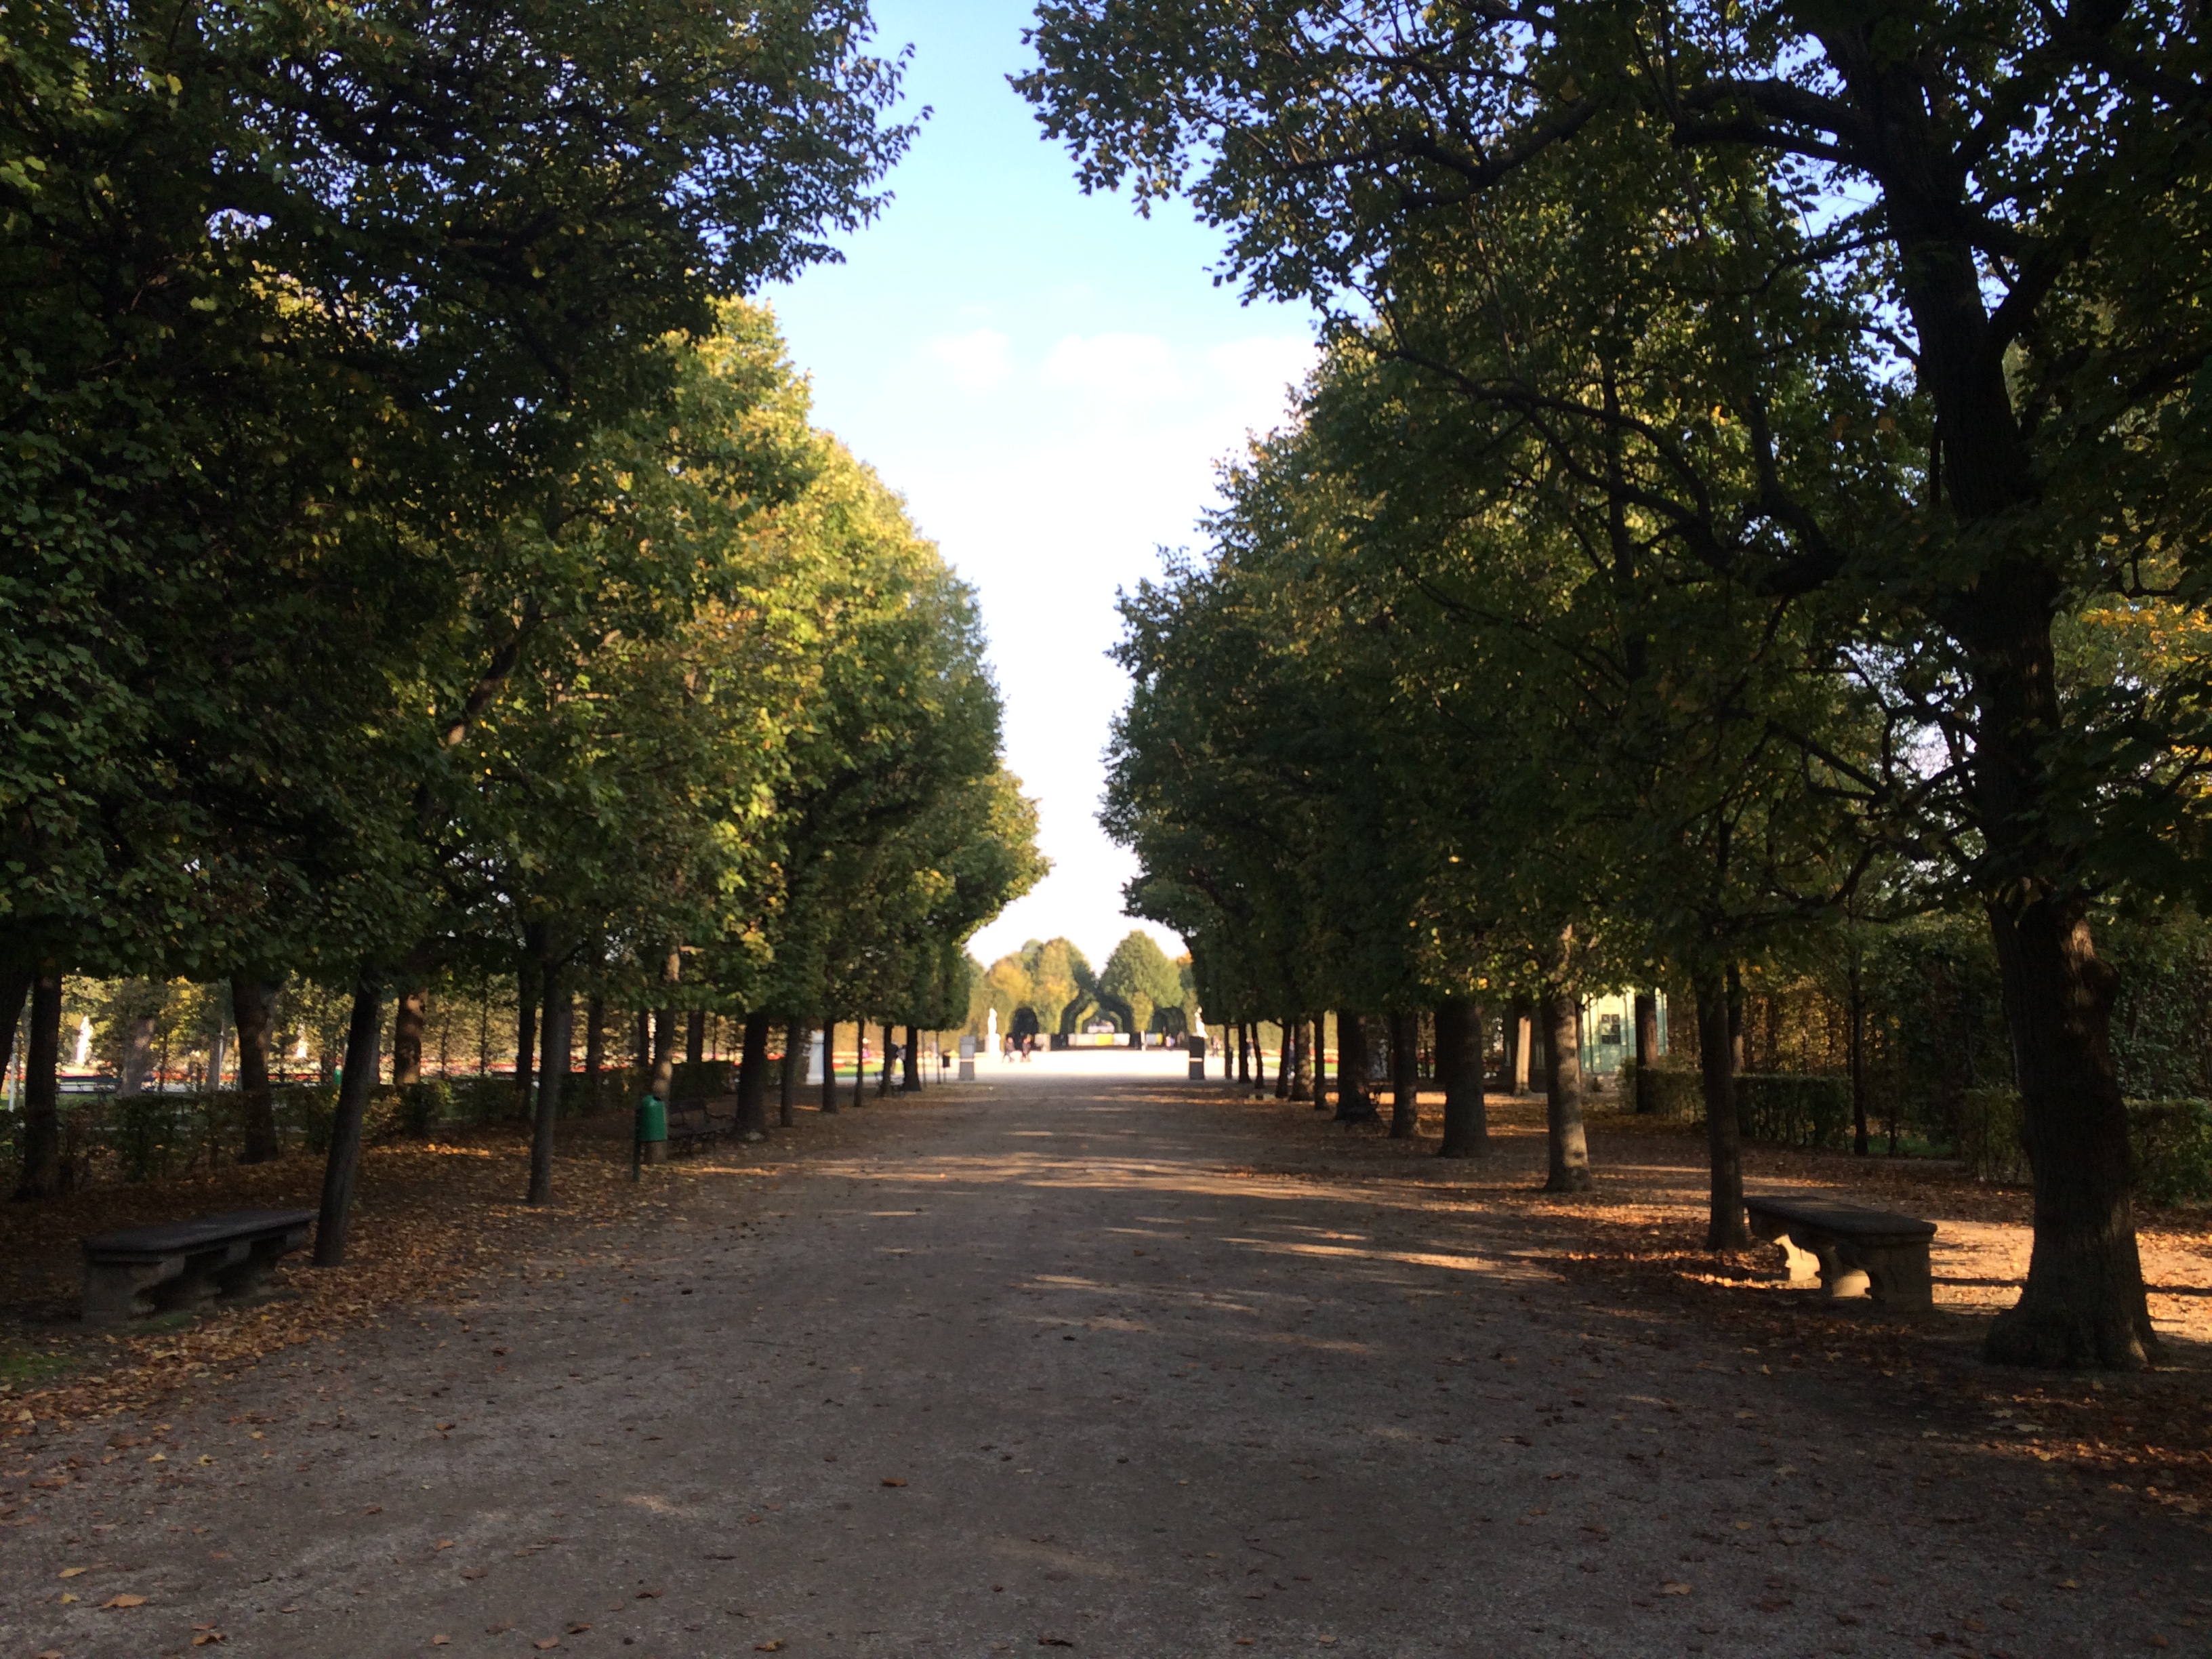 Sehr idyllisch hier im Park von Schloss Schönbrunn in Wien!